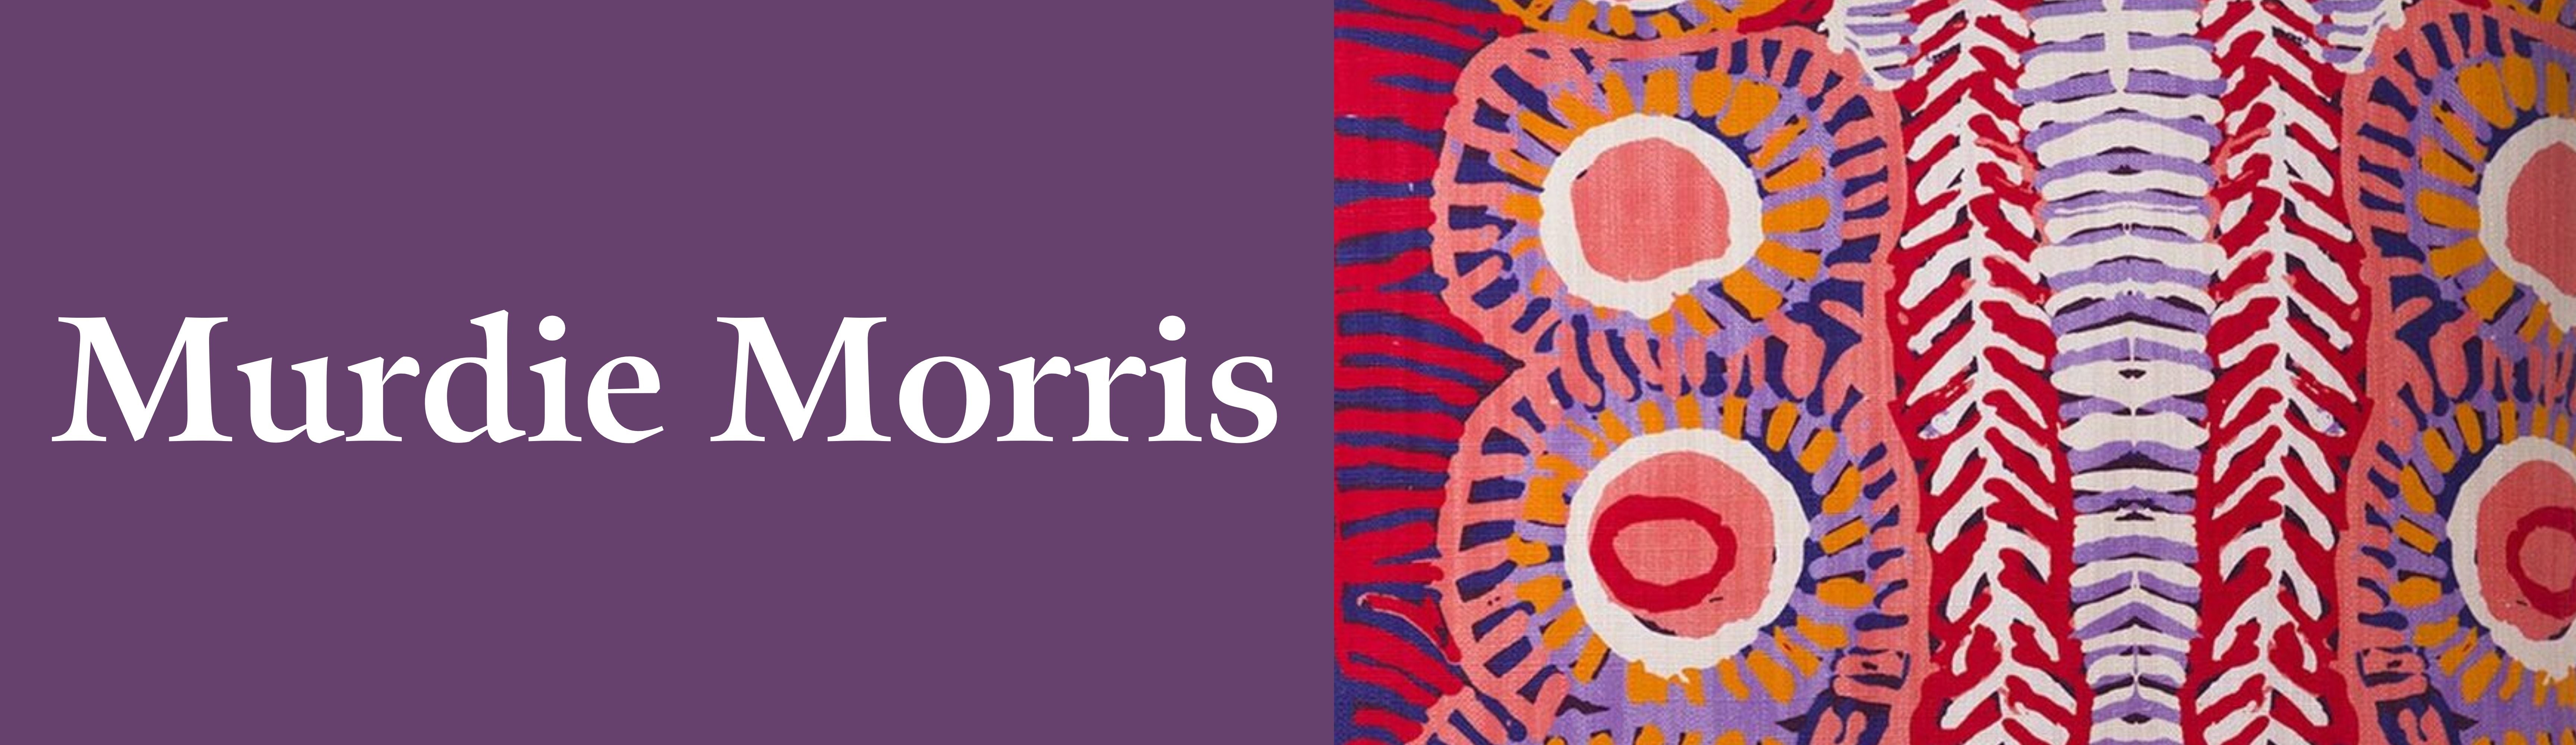 Murdie Morris Aboriginal ARt Gifts australia authentic